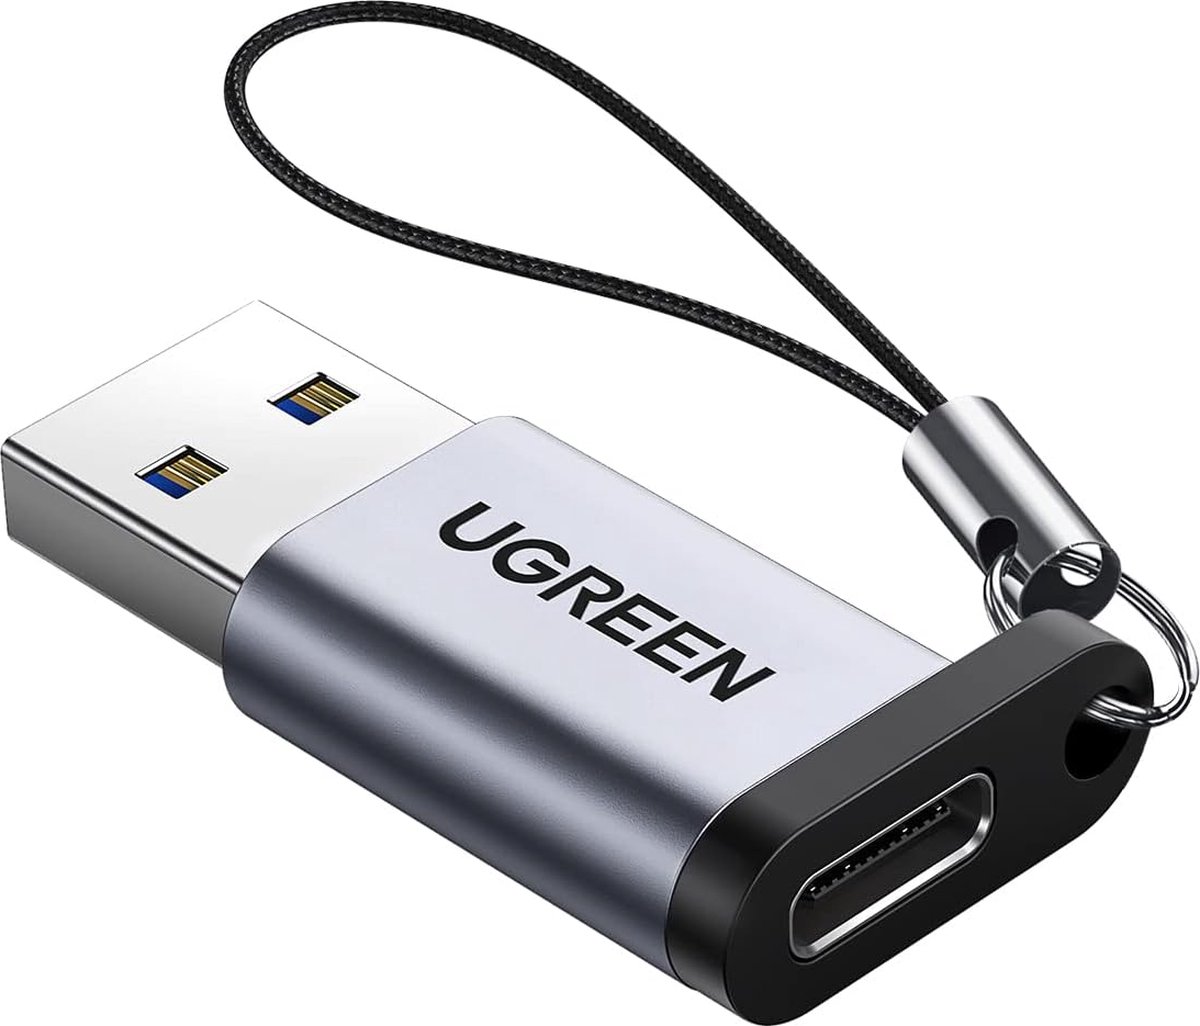 UGREEN USB C naar USB 3.0 Adapter voor Macbook, Chromebook Nexus 5X, Galaxy Note8, Laptop, Tablet, USB Lader, Aluminium Behuizing. (Grijs)